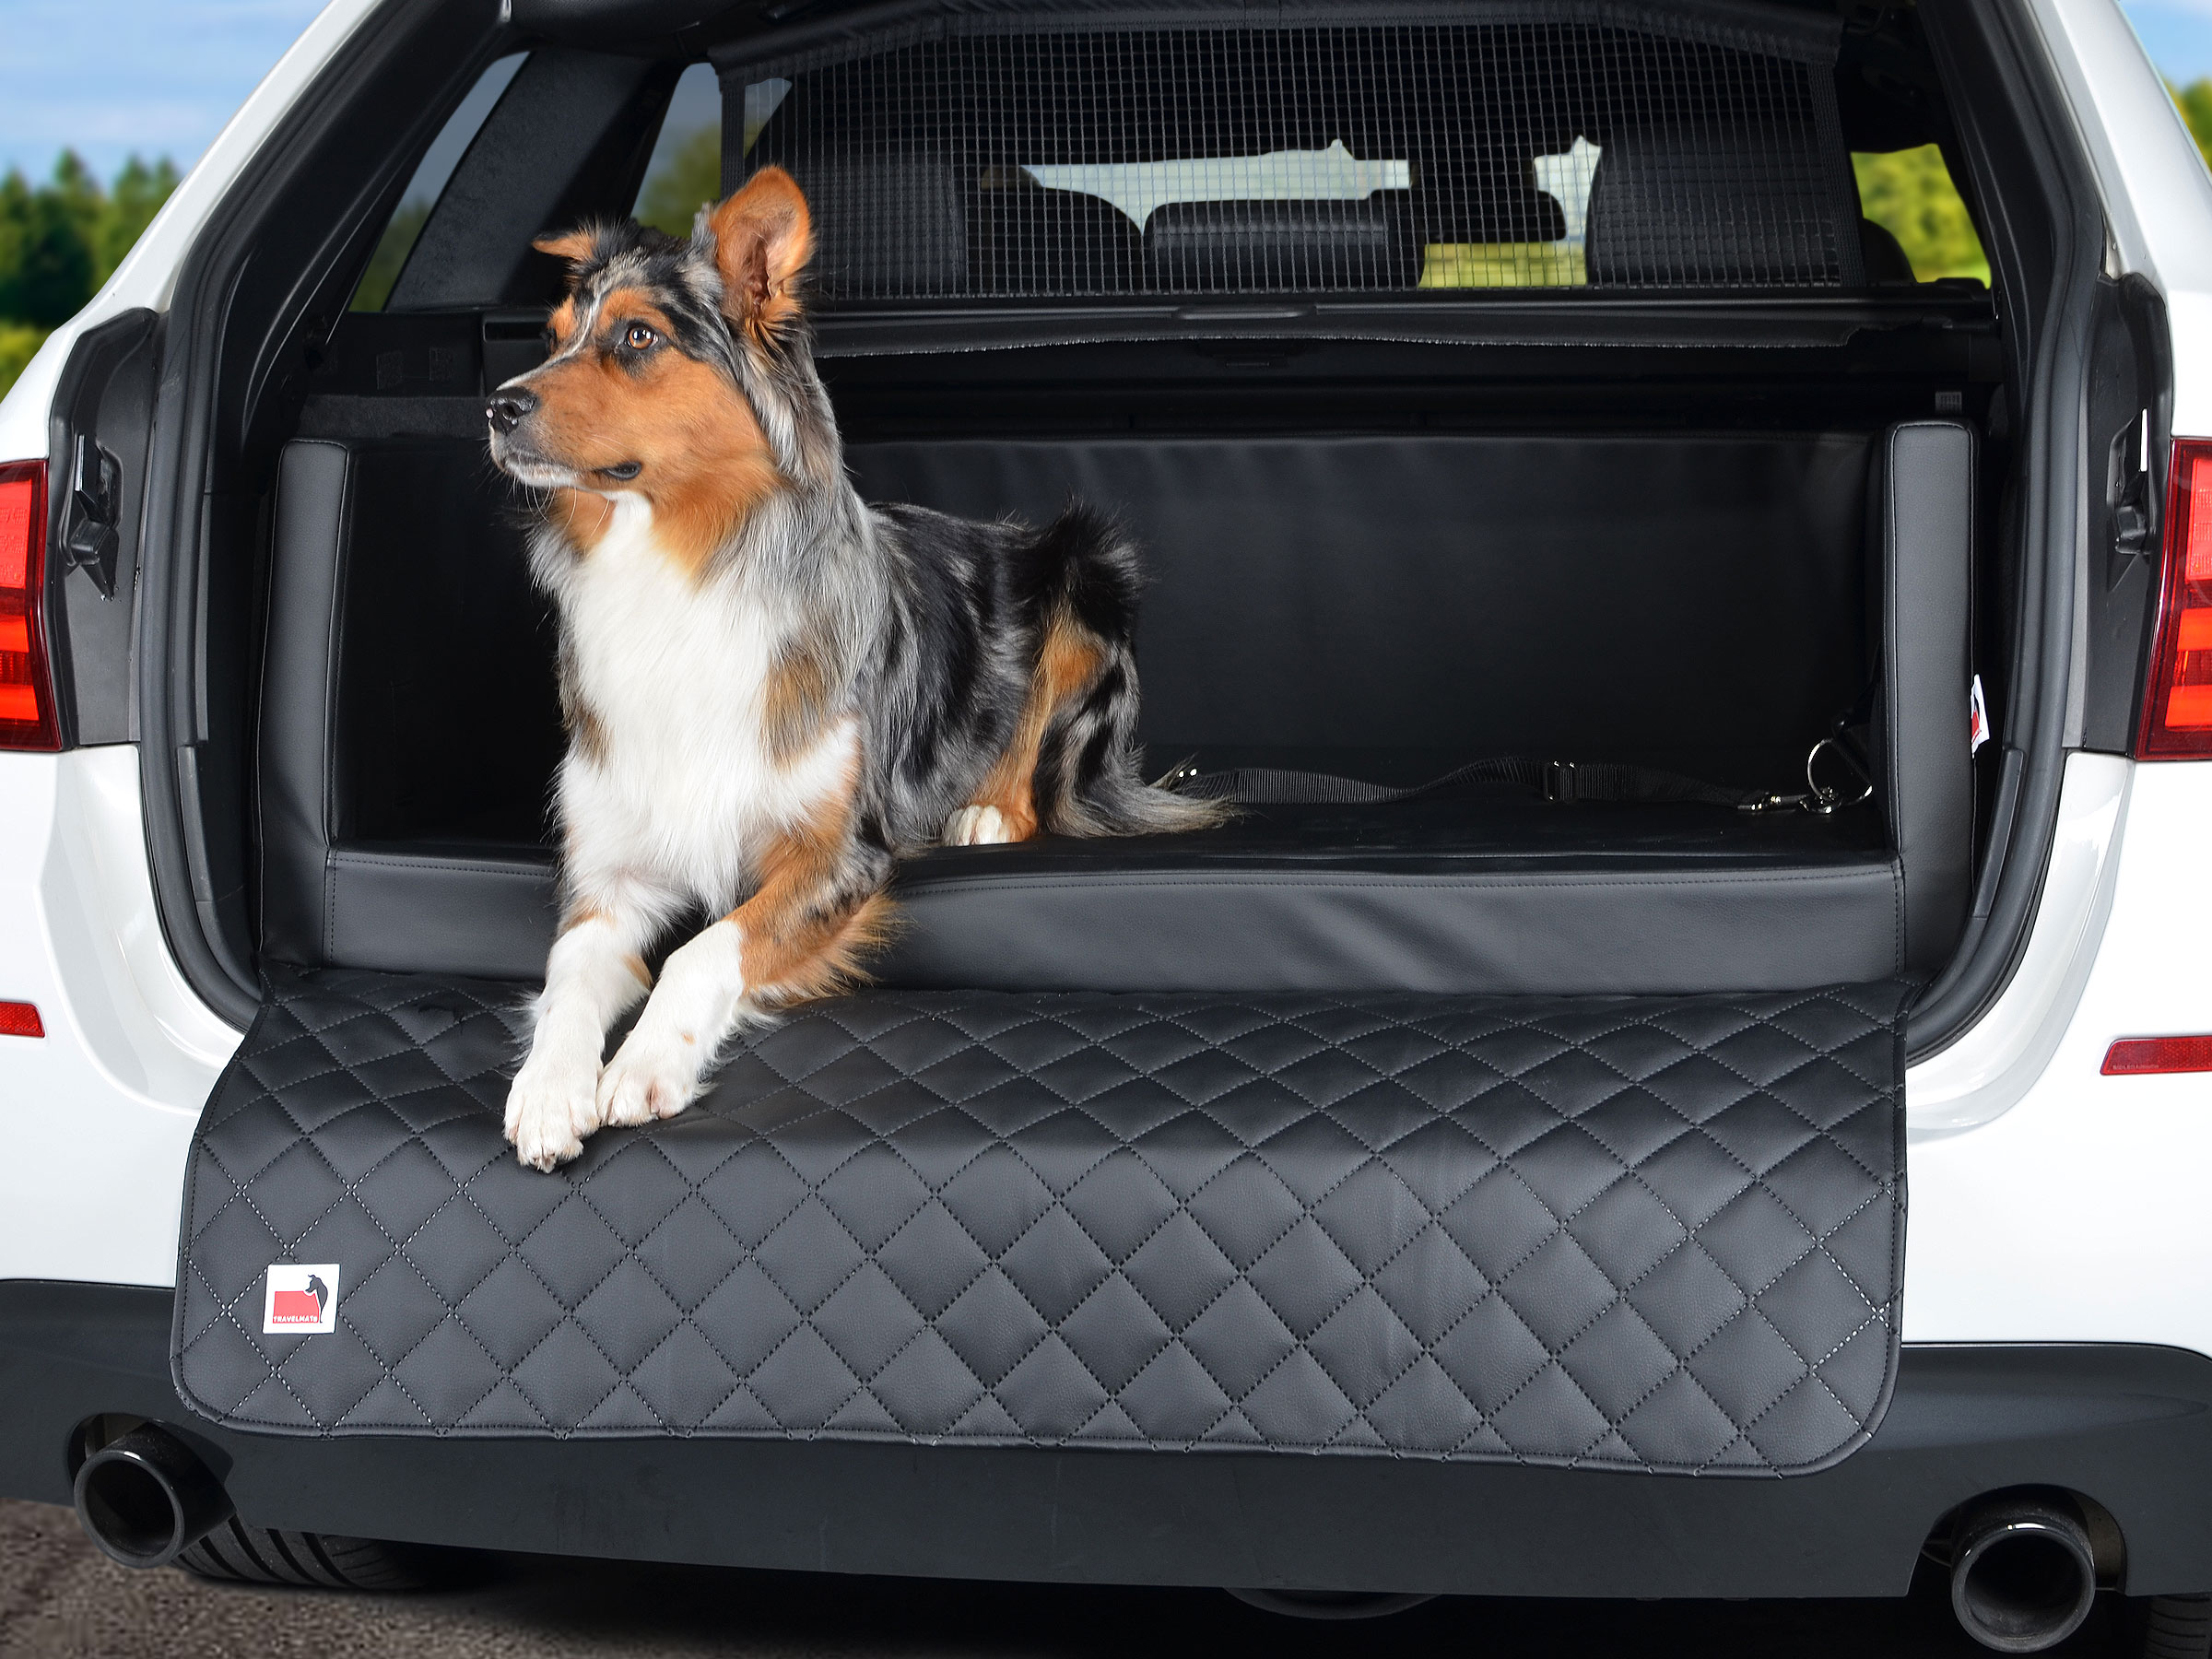 TIERVITAL NATURPRODUKTE - Hunde Autobett Travelmat Plus (OPEL)